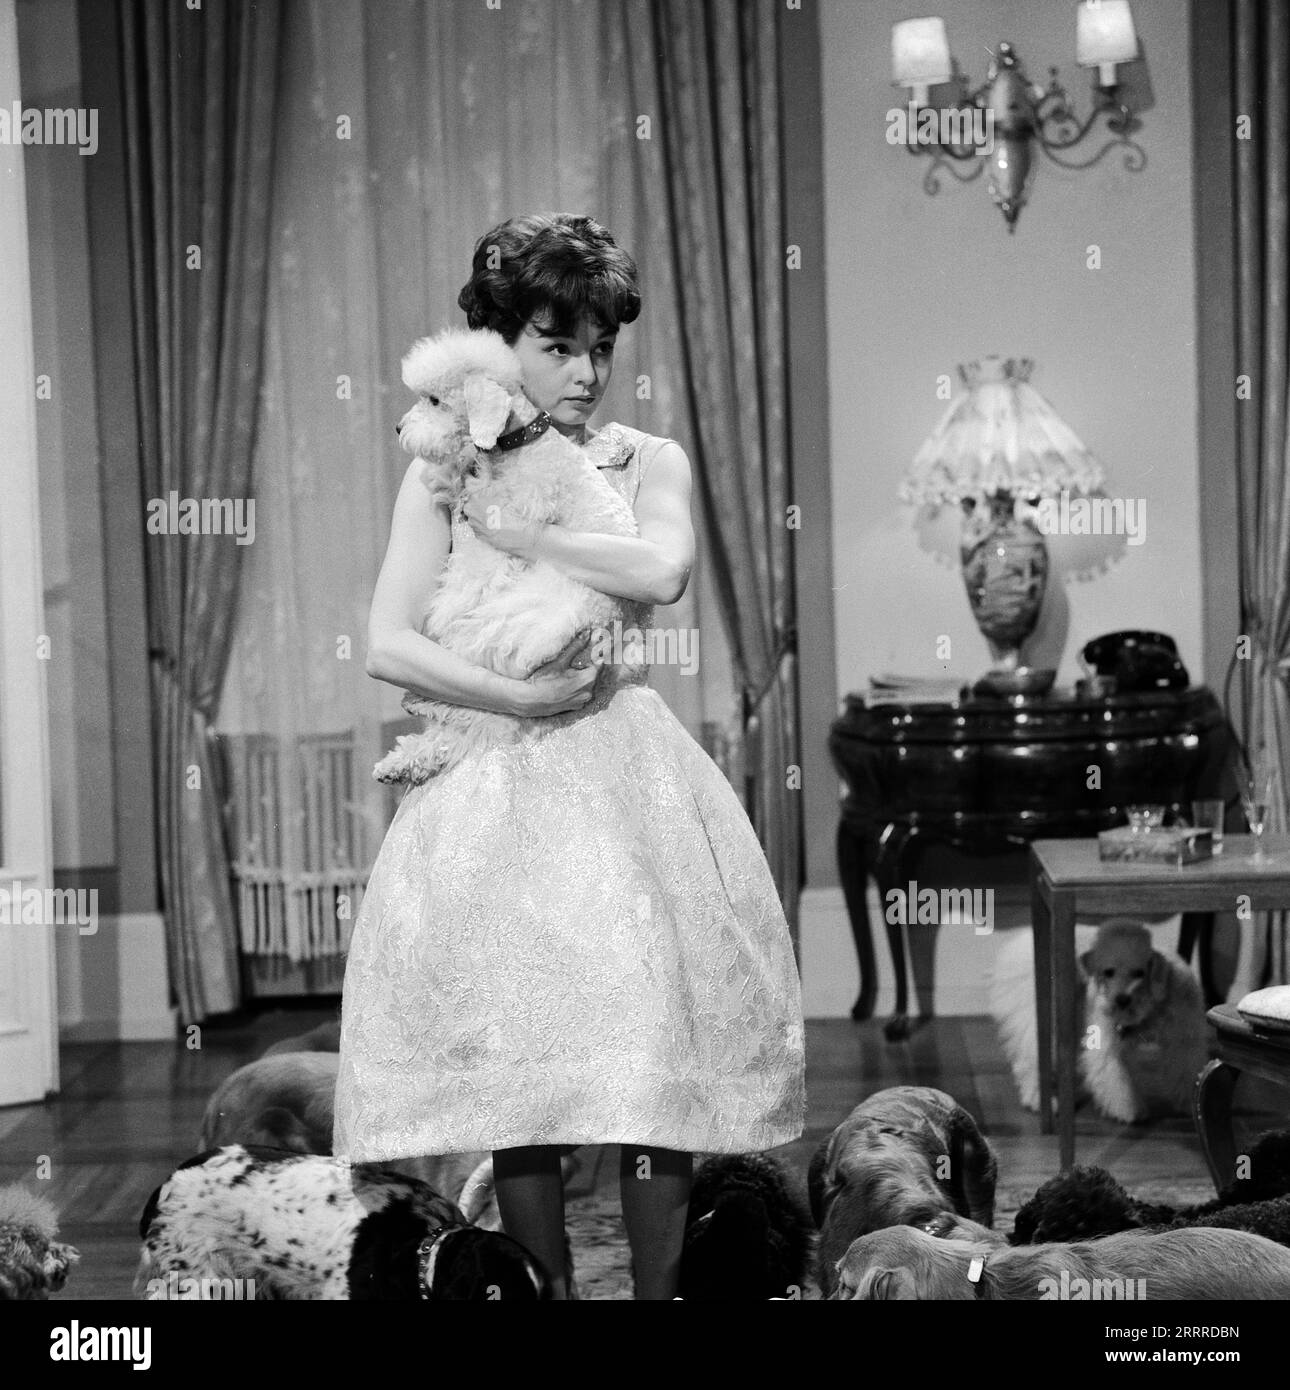 Sturm im Wasserglas, Spielfilm nach dem Bühnenstück von Bruno Frank, Deutschland 1960, Regie: Josef von Baky, Darsteller: Ingrid Andree und Hunde. Stock Photo